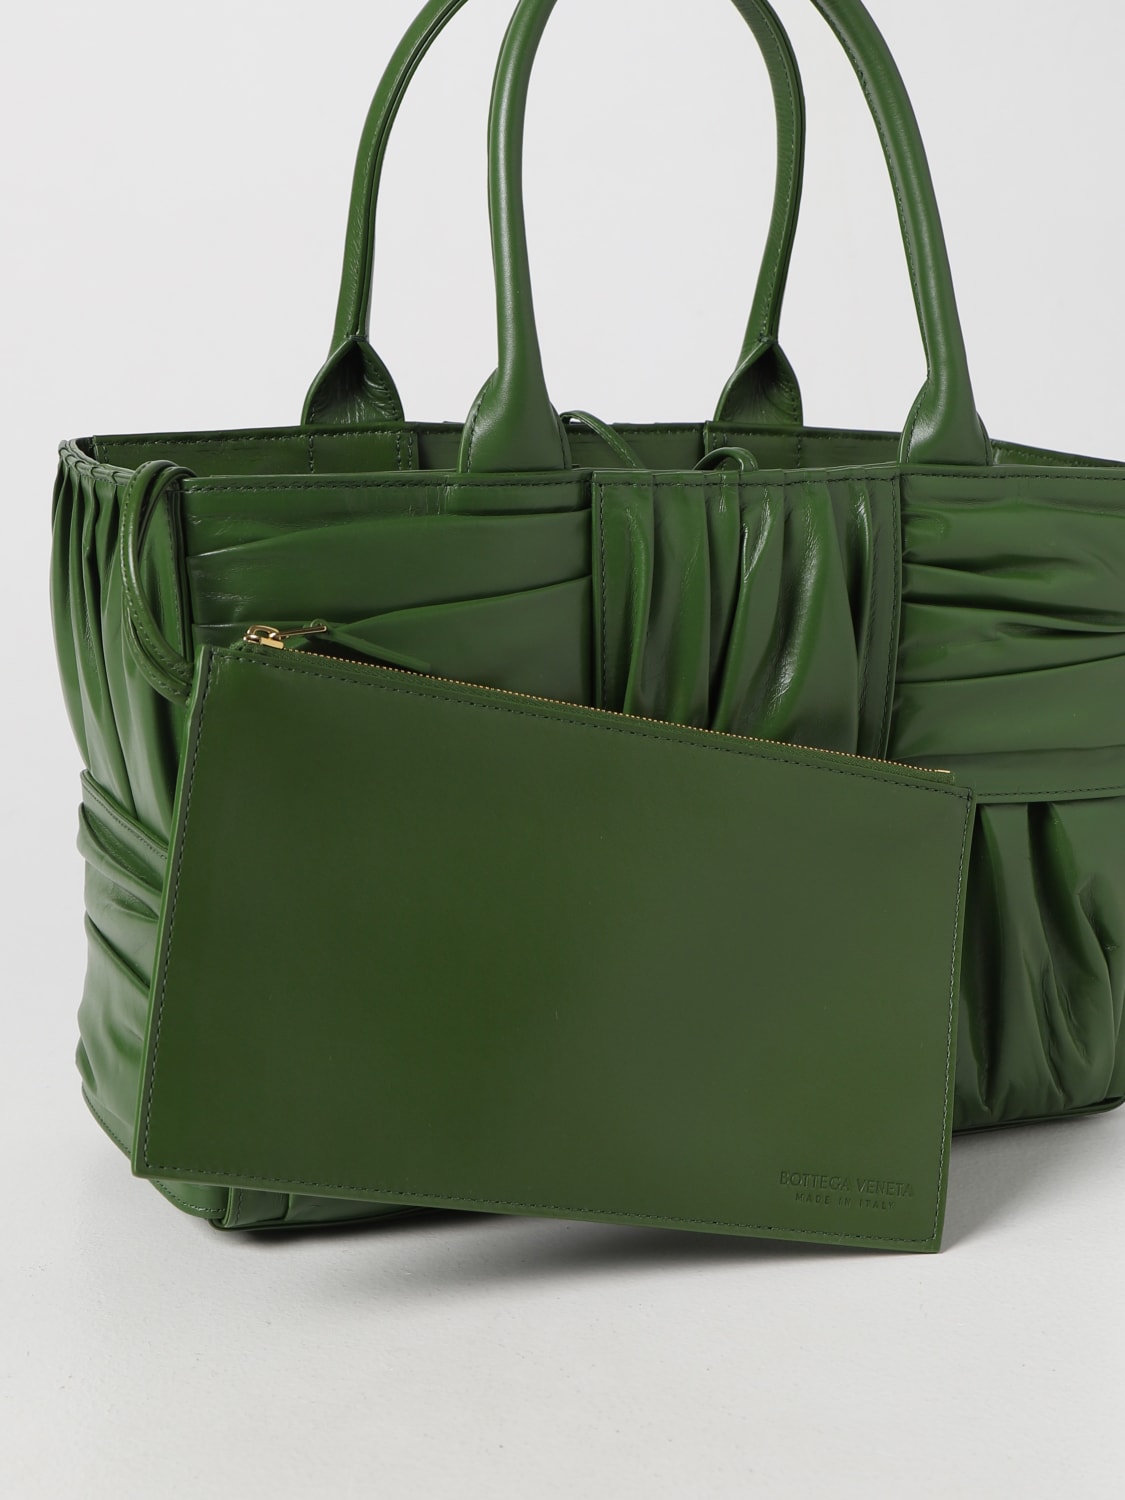 Bottega Veneta Handbags Women Leather Green